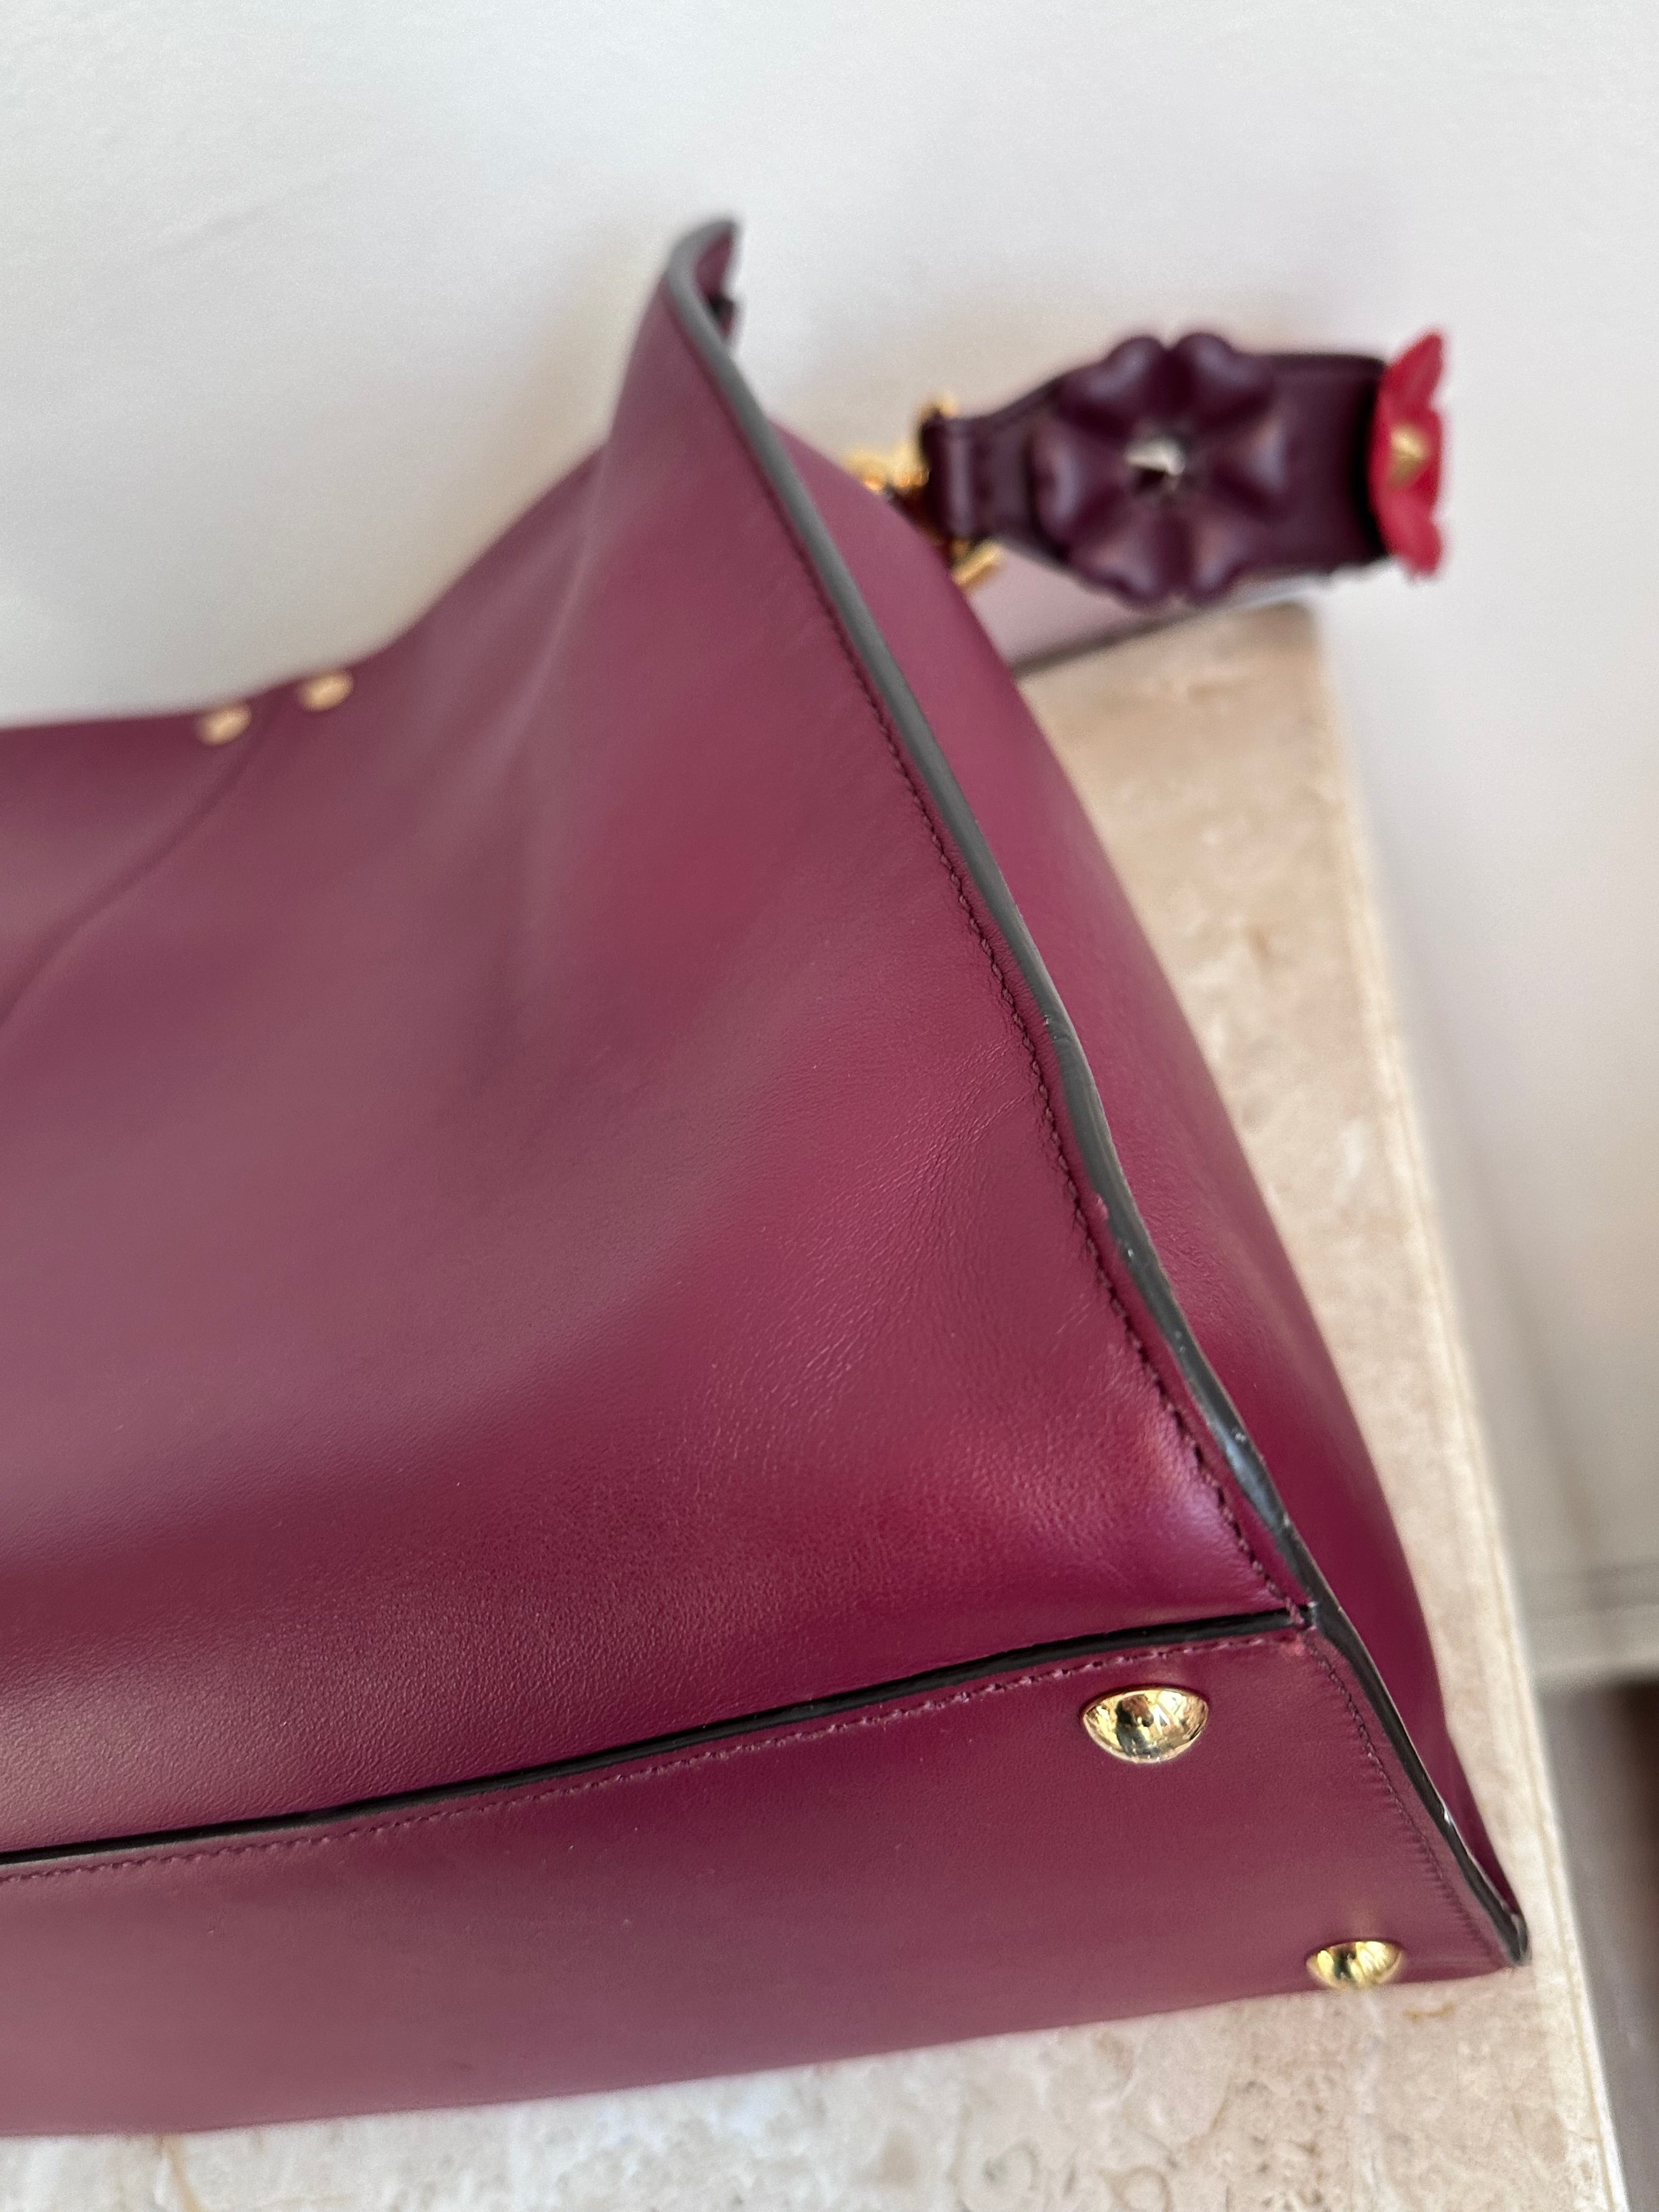 Pre-Owned FENDI Large Burgundy Leather Peekaboo Bag